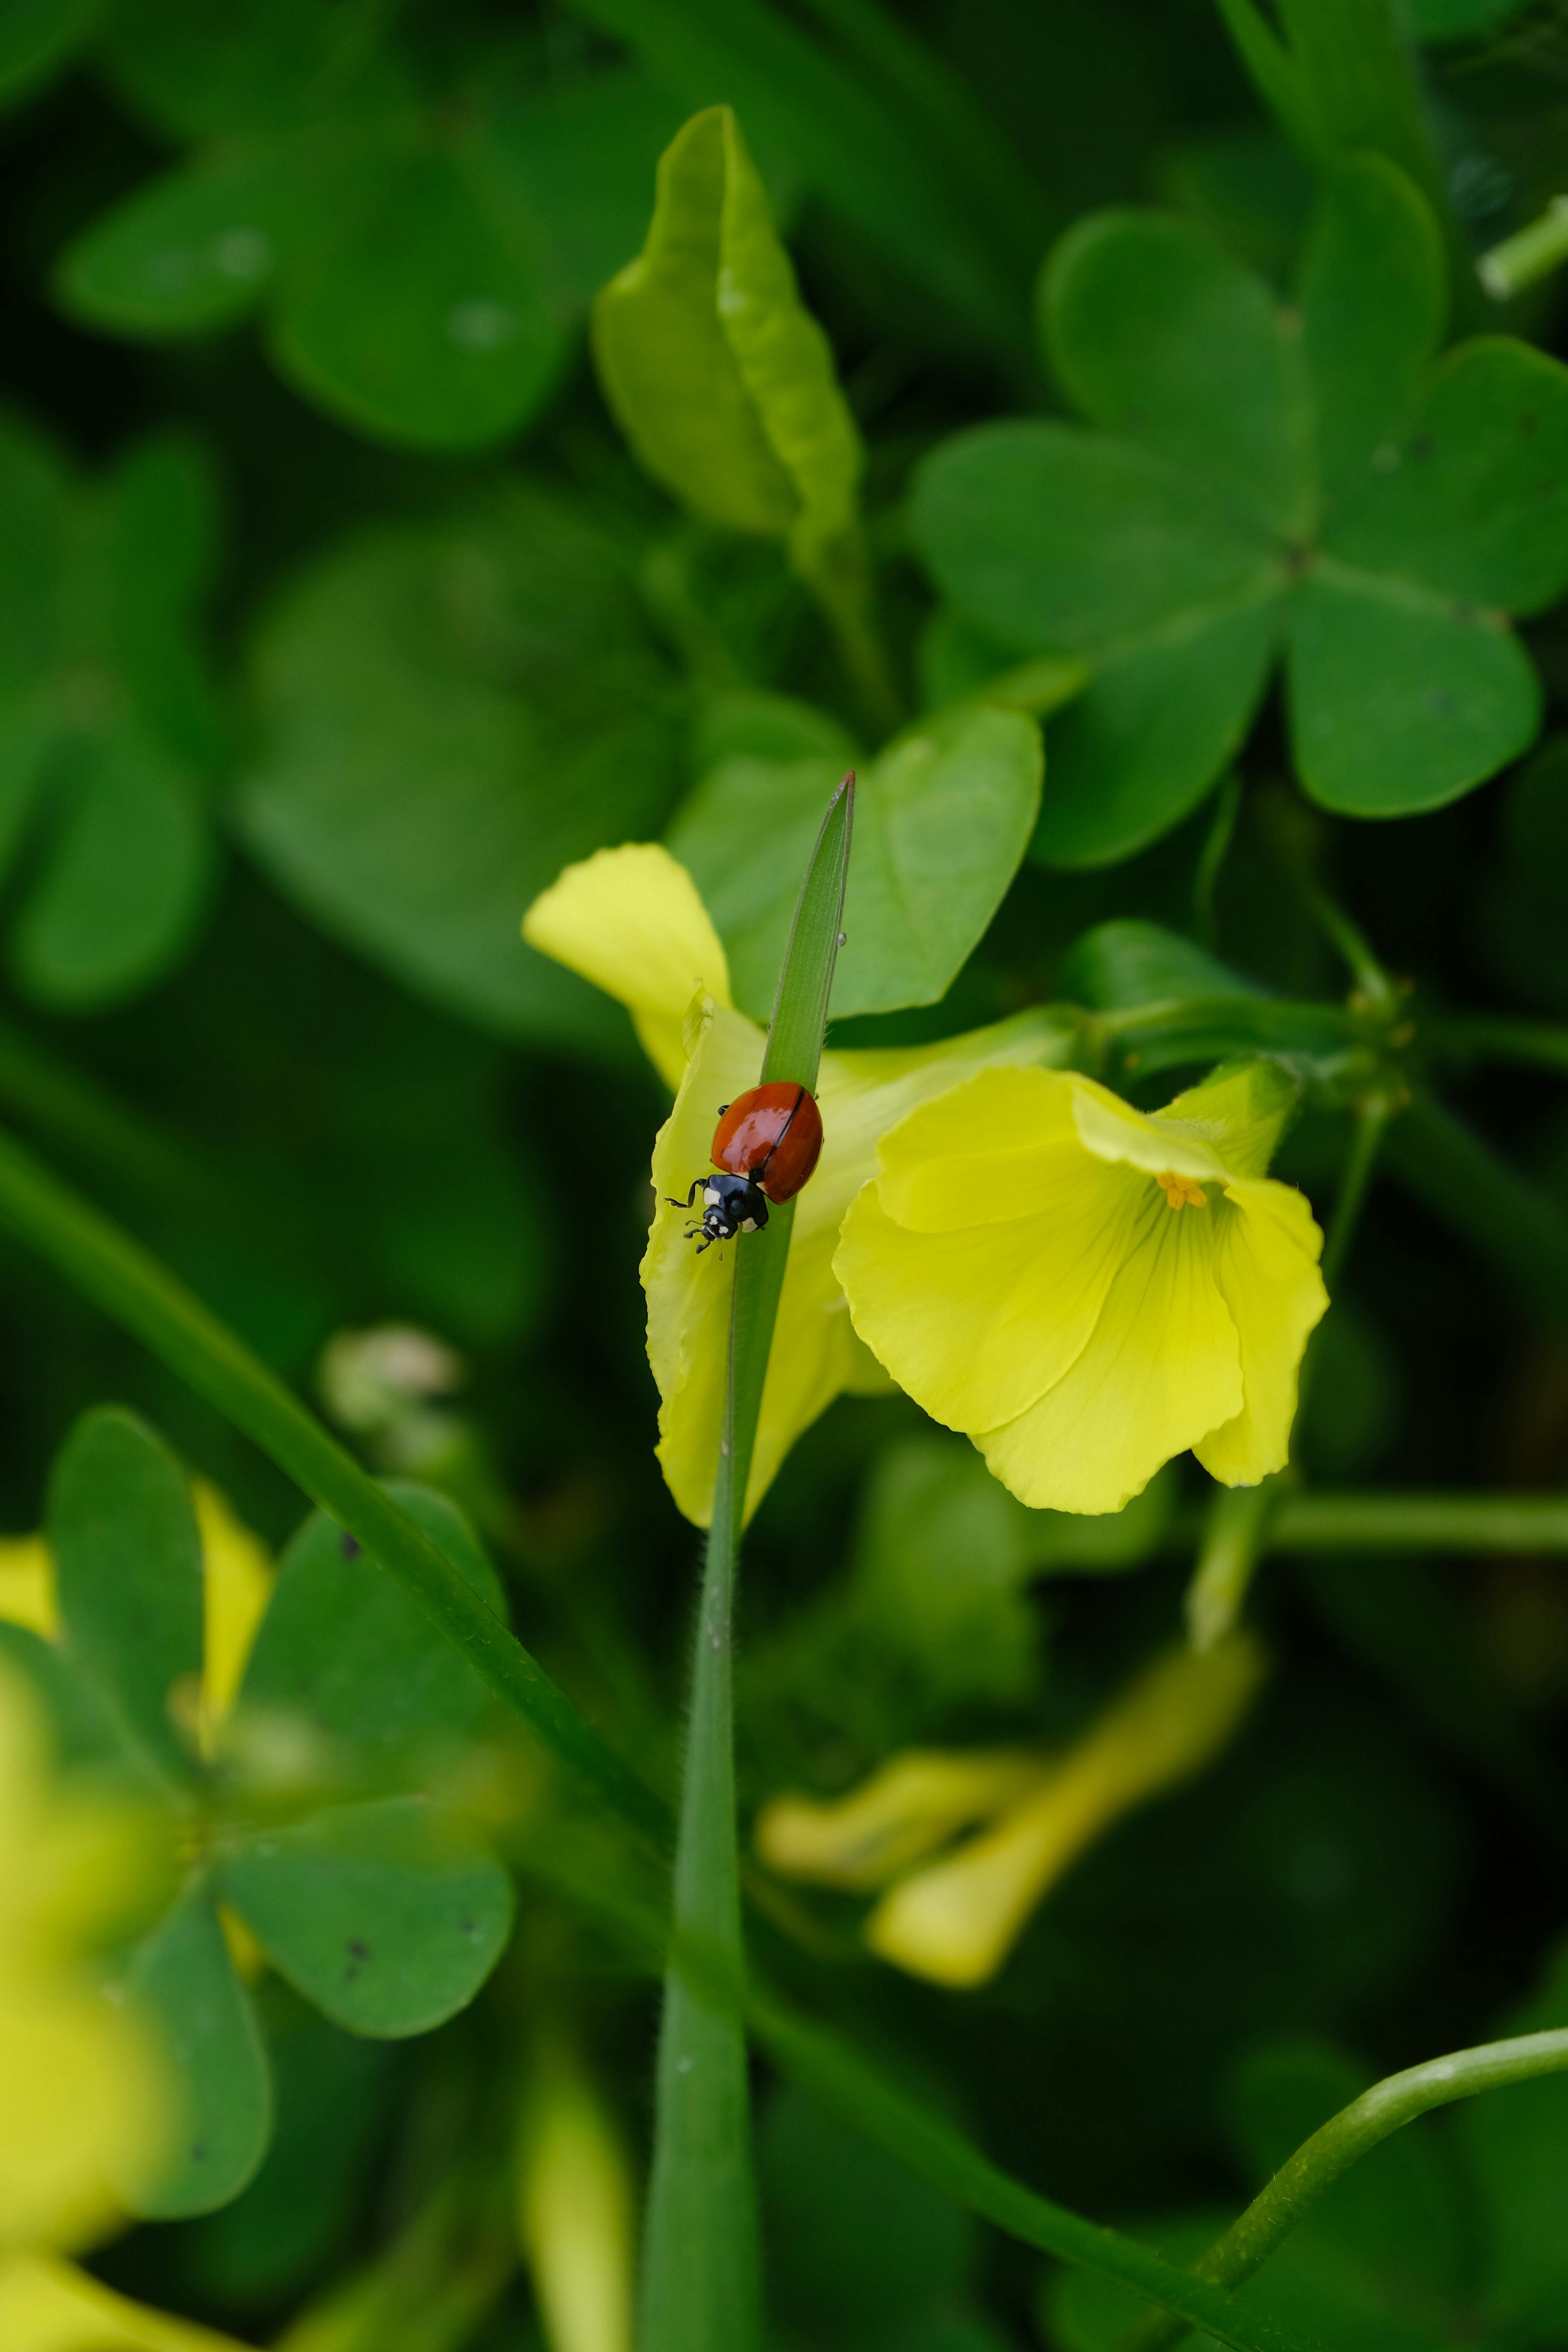 A photo of a ladybug on a grass stalk